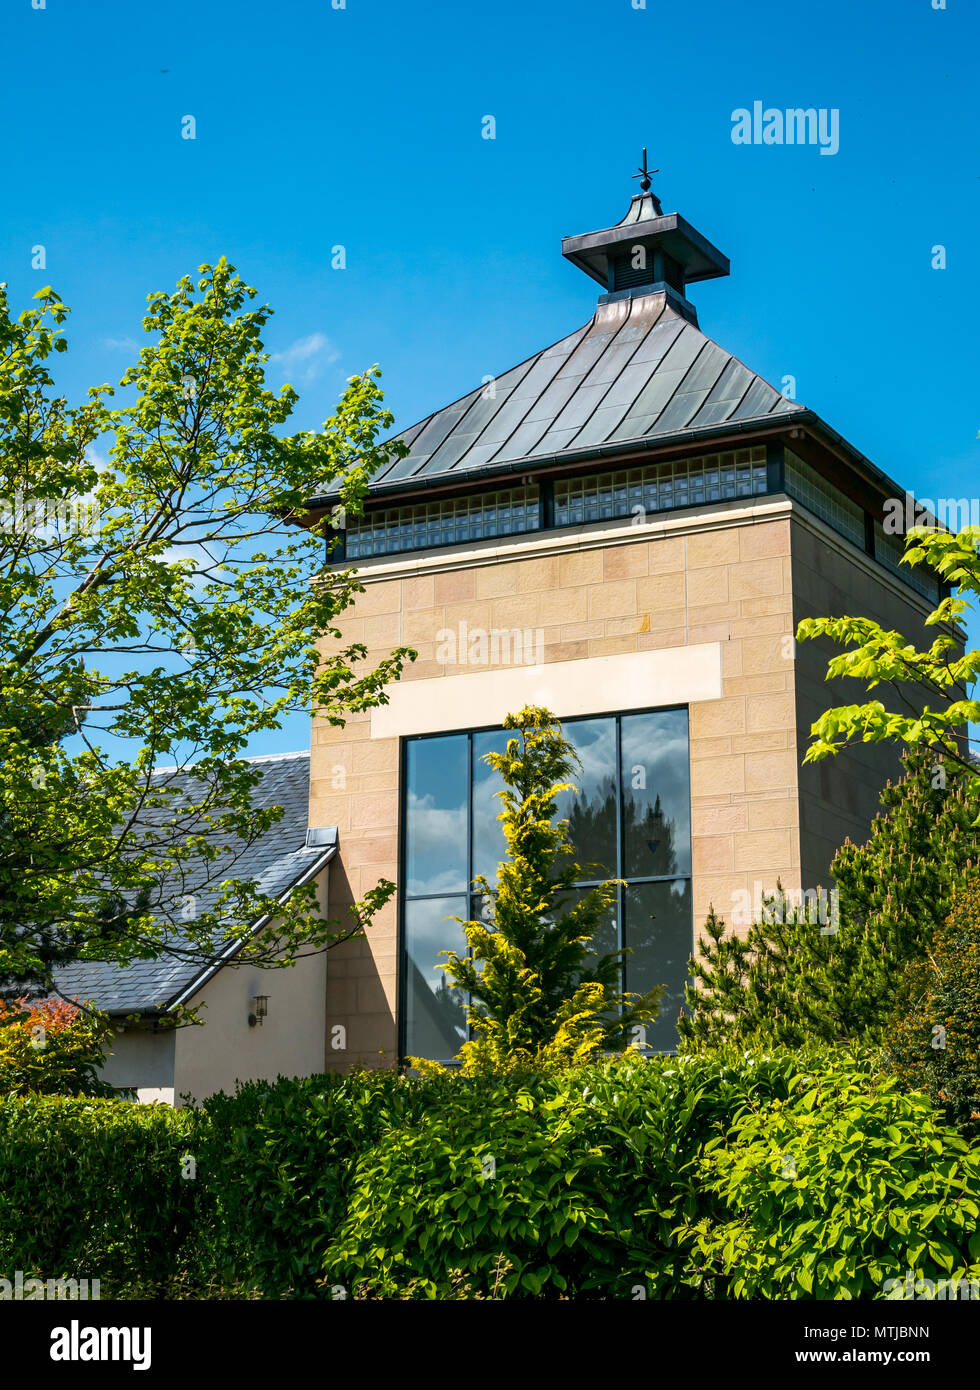 Istituto di Ricerca Scotch Whisky con torre conformata come un oast house, Heriot Watt University, Edimburgo, Scozia, Regno Unito Foto Stock